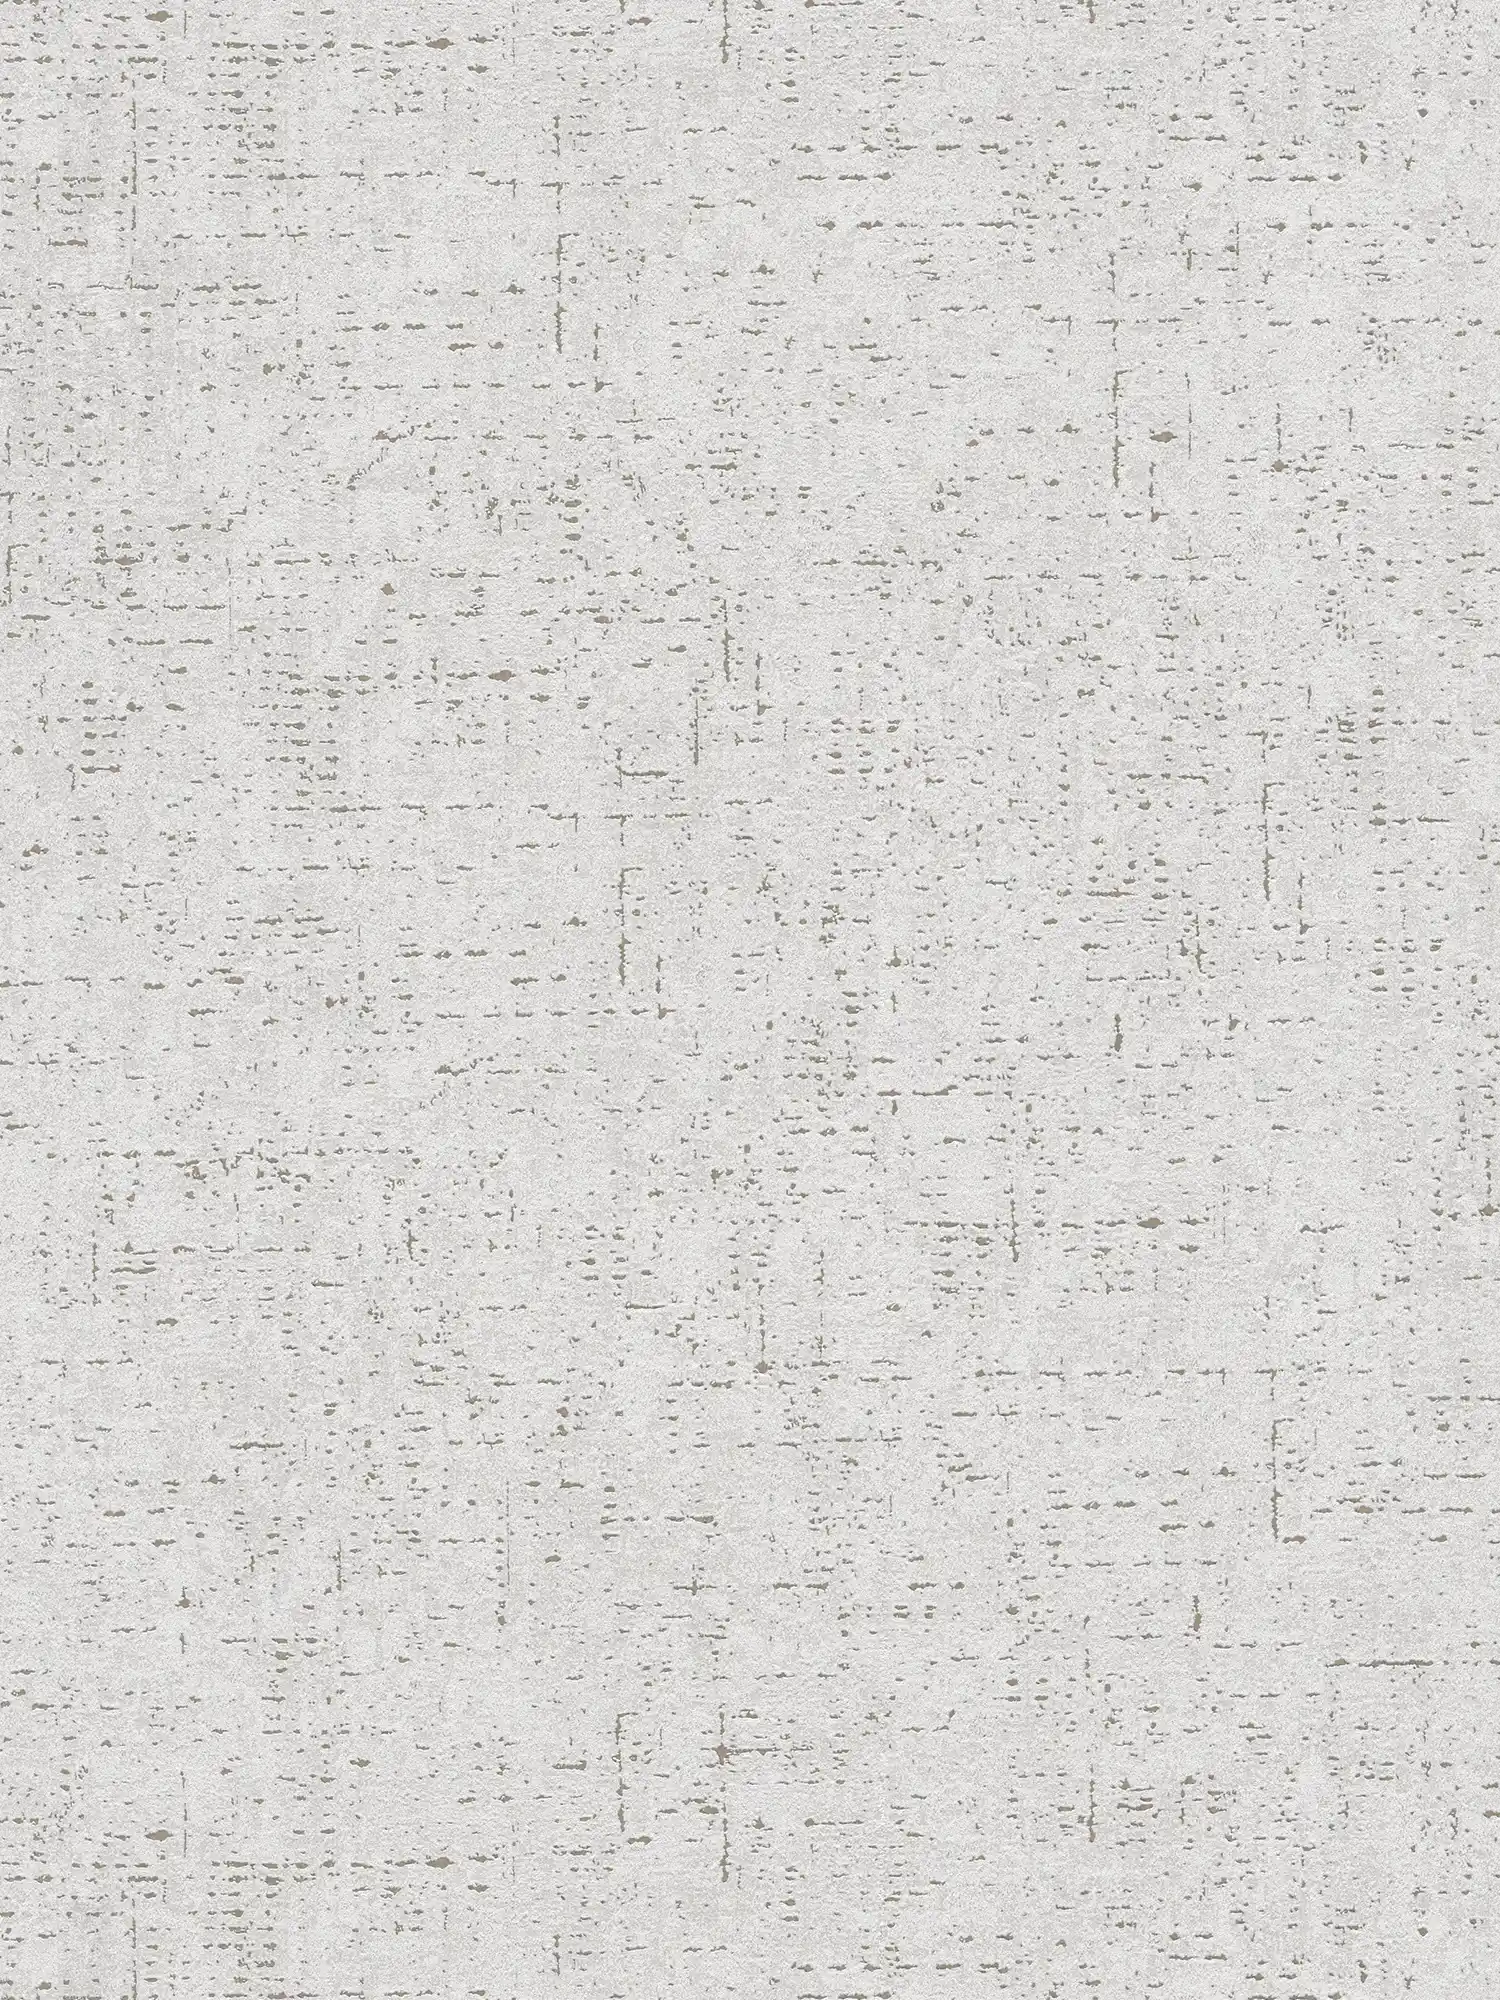 Eenheidsbehang met textuurpatroon in pleisterlook - grijs
